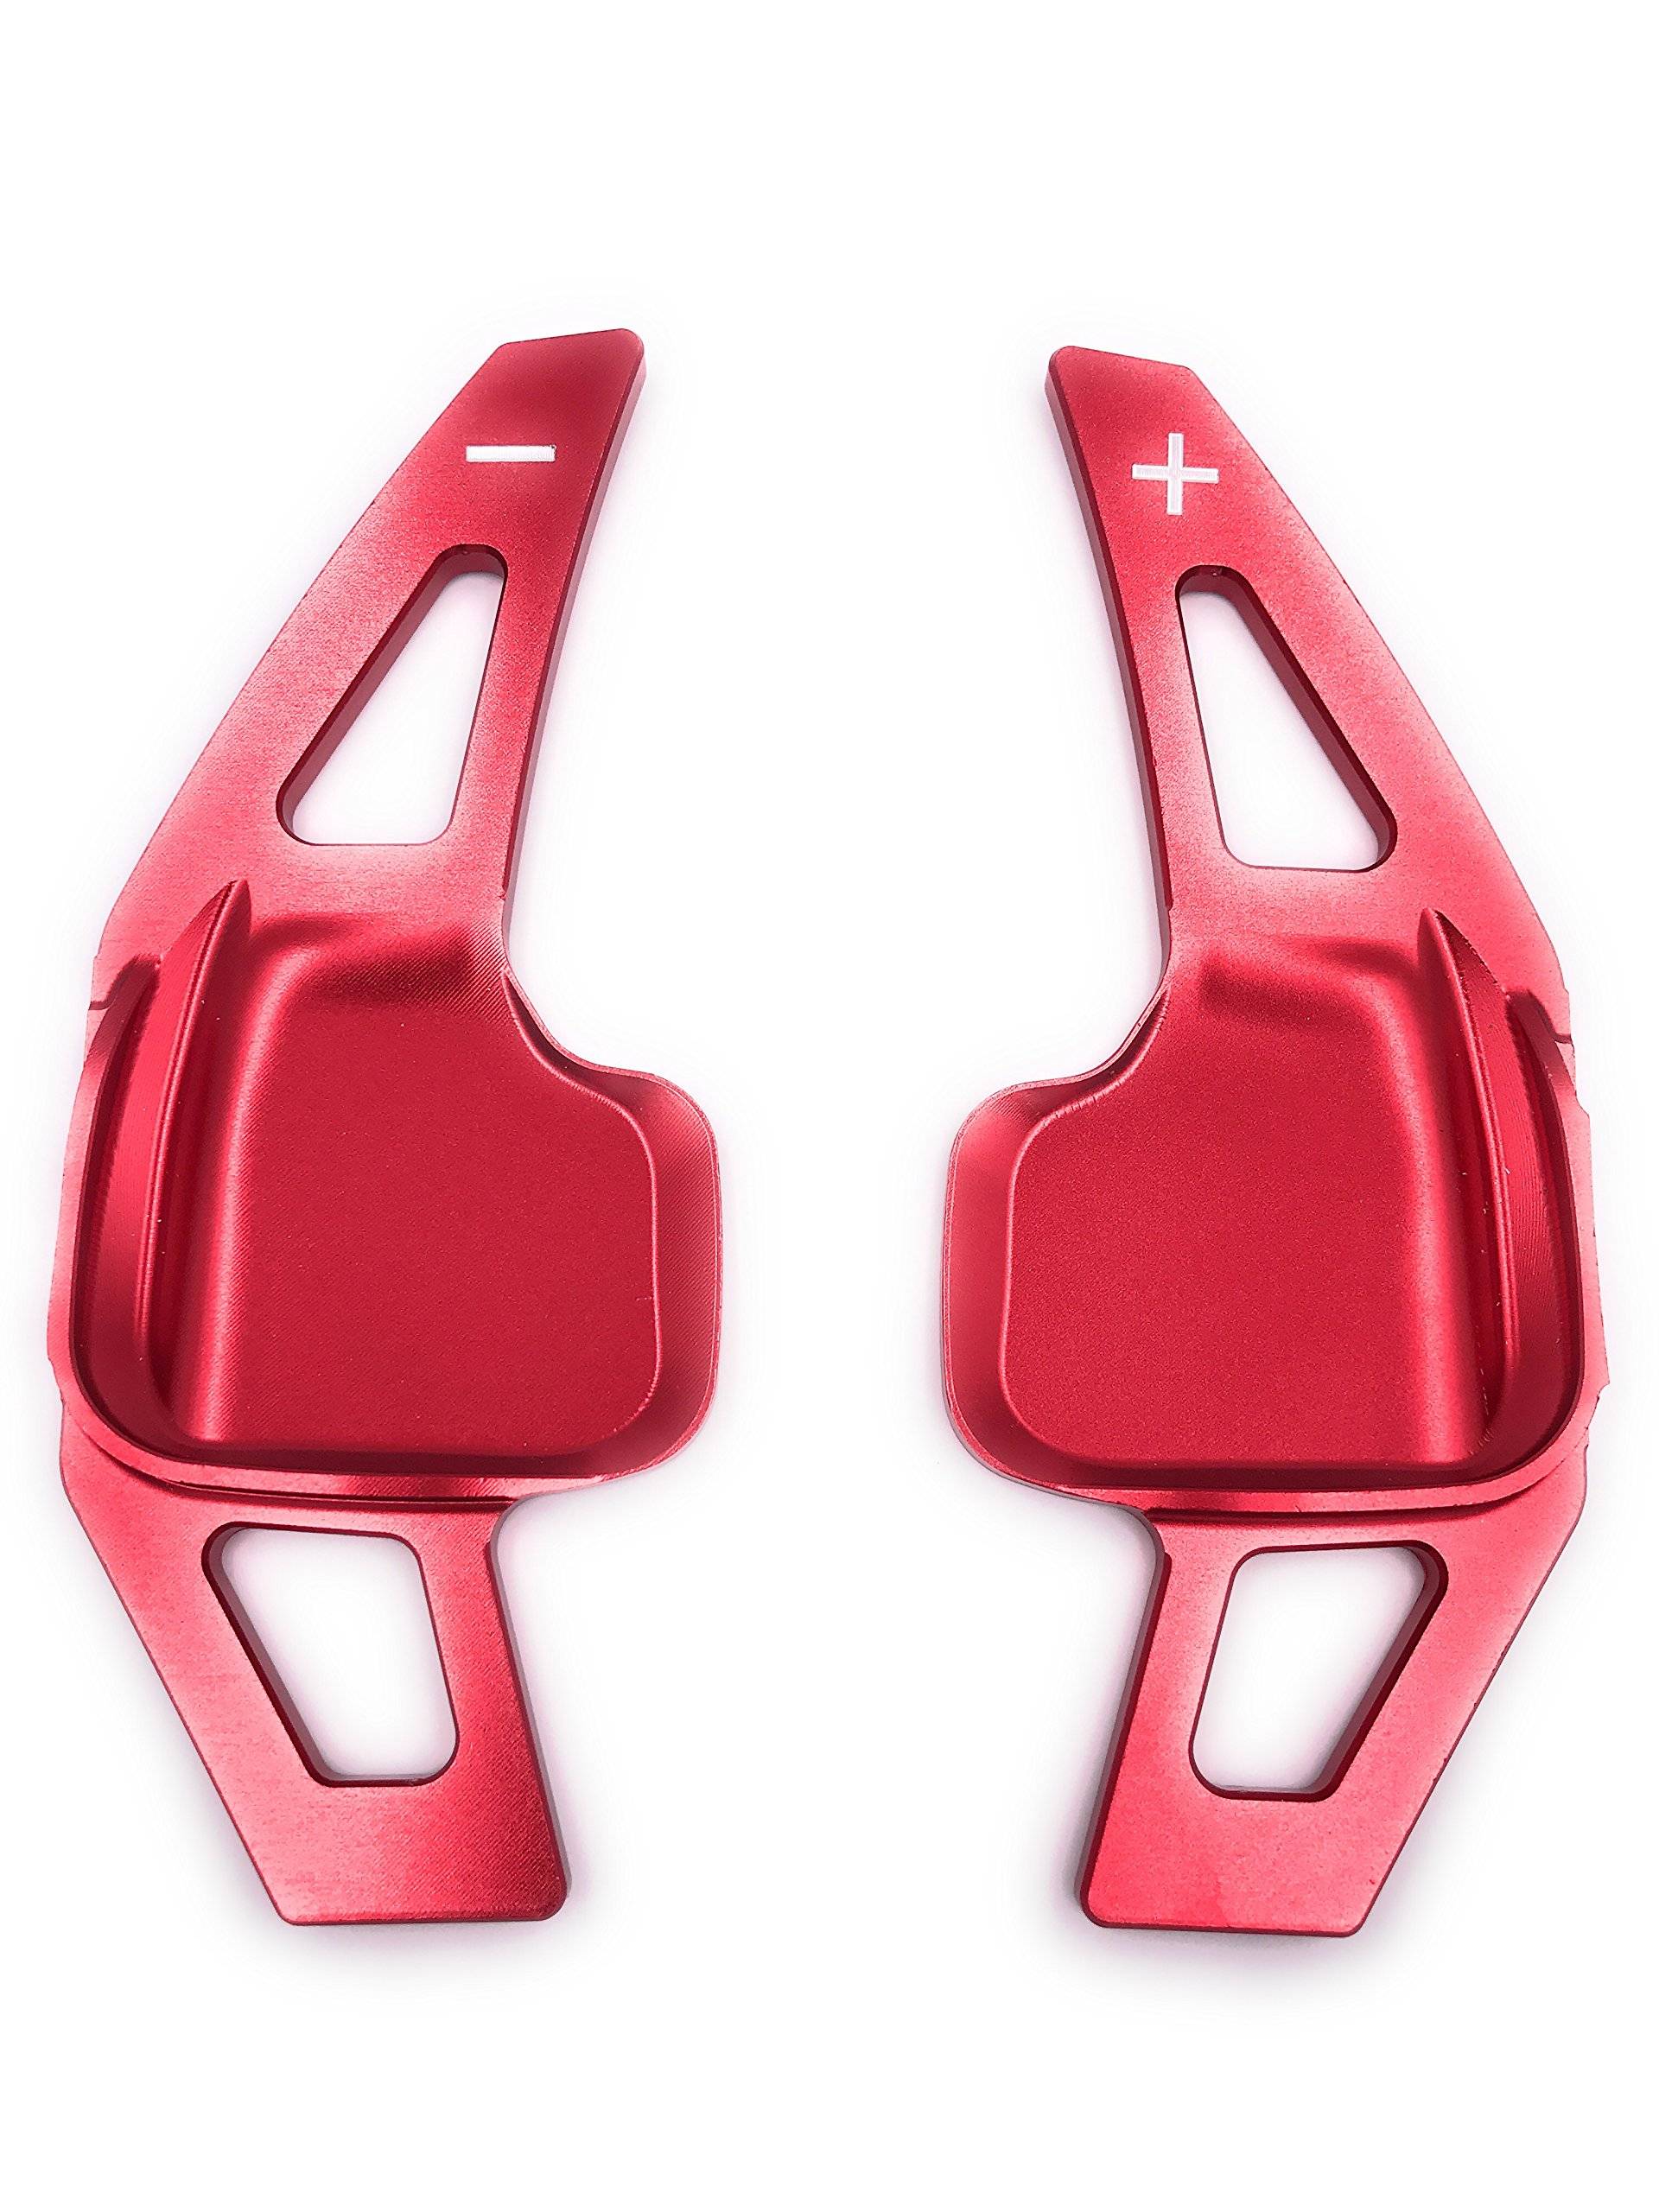 H-Customs Schaltwippen Verlängerung Schaltung Shift Paddle Alu eloxiert Rot kompatibel mit F20 F30 F18 F32 von H-Customs